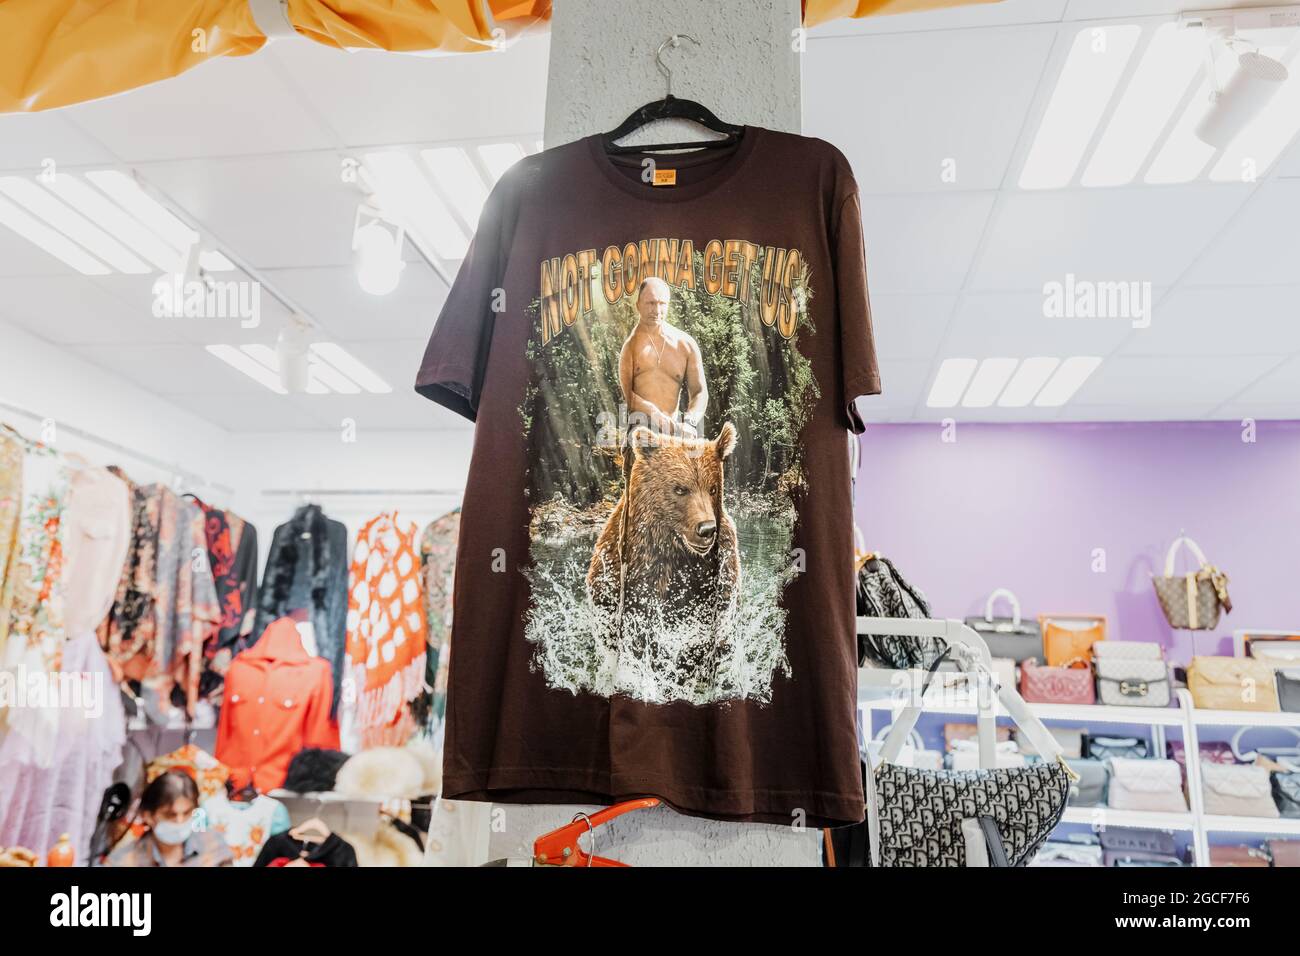 26 febbraio 2021, Emirati Arabi Uniti, Dubai: La T-shirt con la puttura del presidente Vladimir Putin a cavallo su un orso selvatico è in vendita nel negozio di souvenir russo Foto Stock